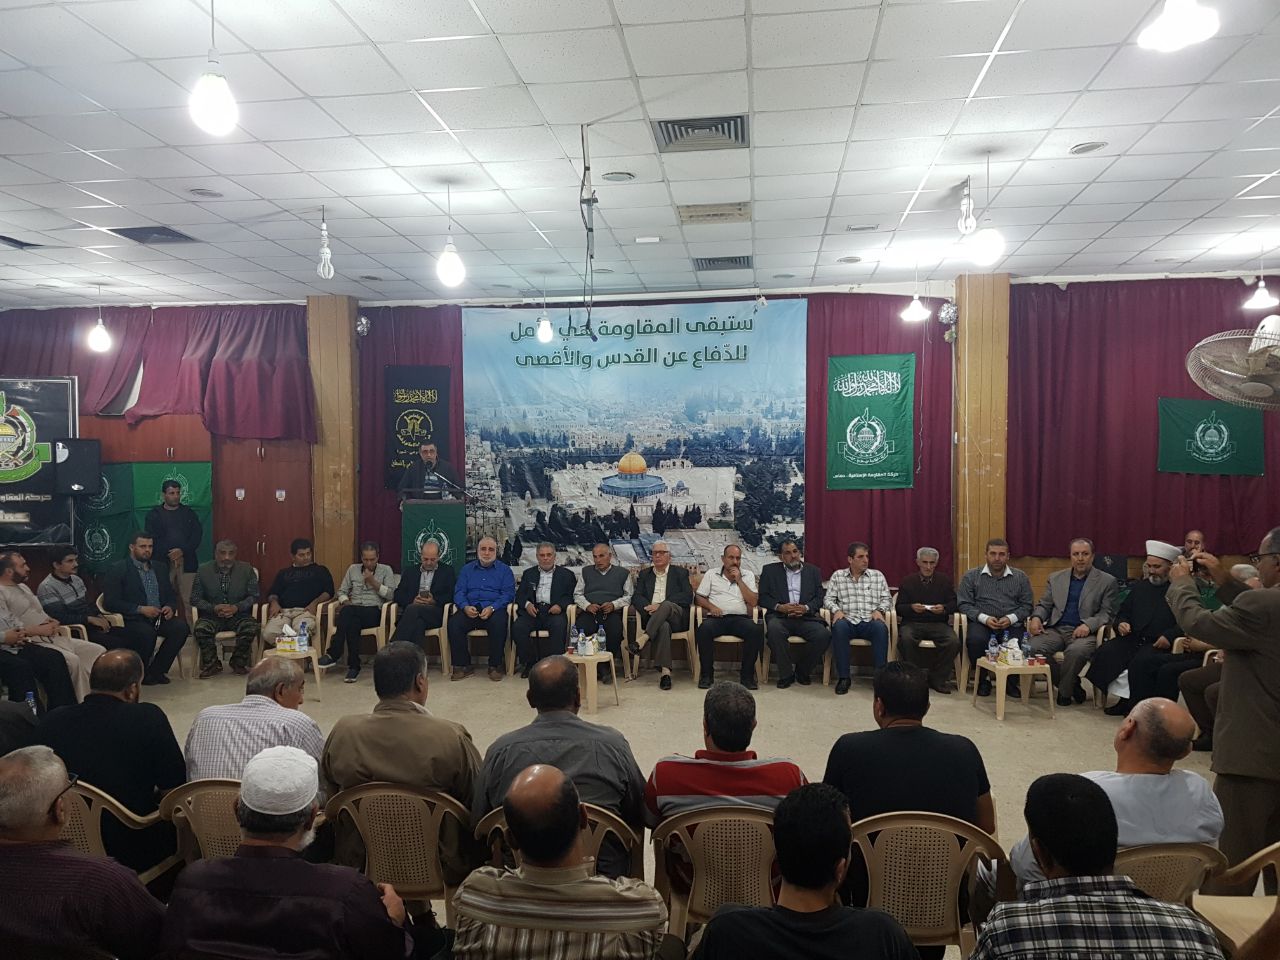 حماس والجهاد في لبنان يتقبلون التهاني بشهداء الأنفاق